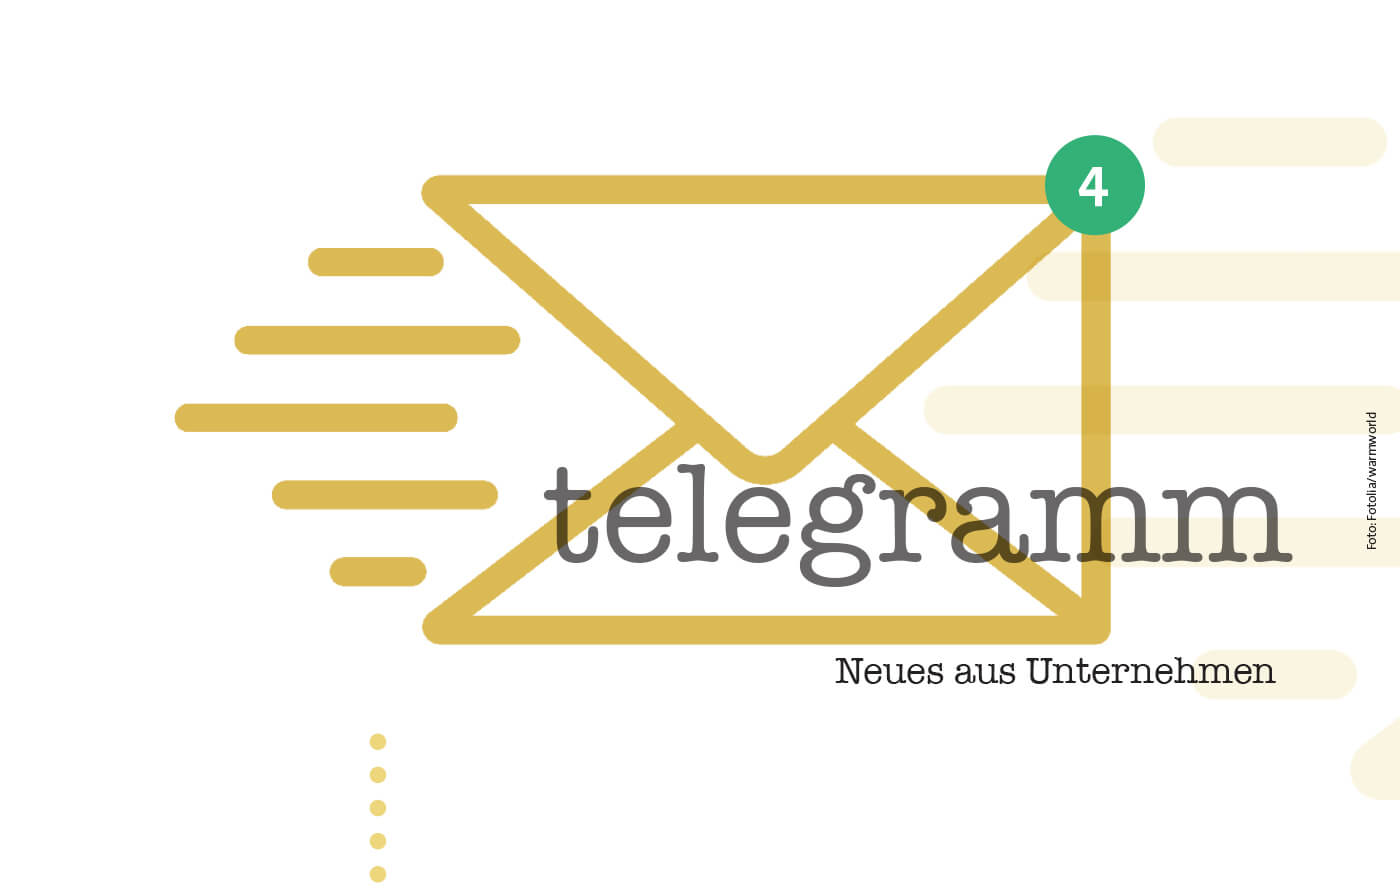 telegramm. Neues aus Unternehmen, Foto: Fotolia/warmworld